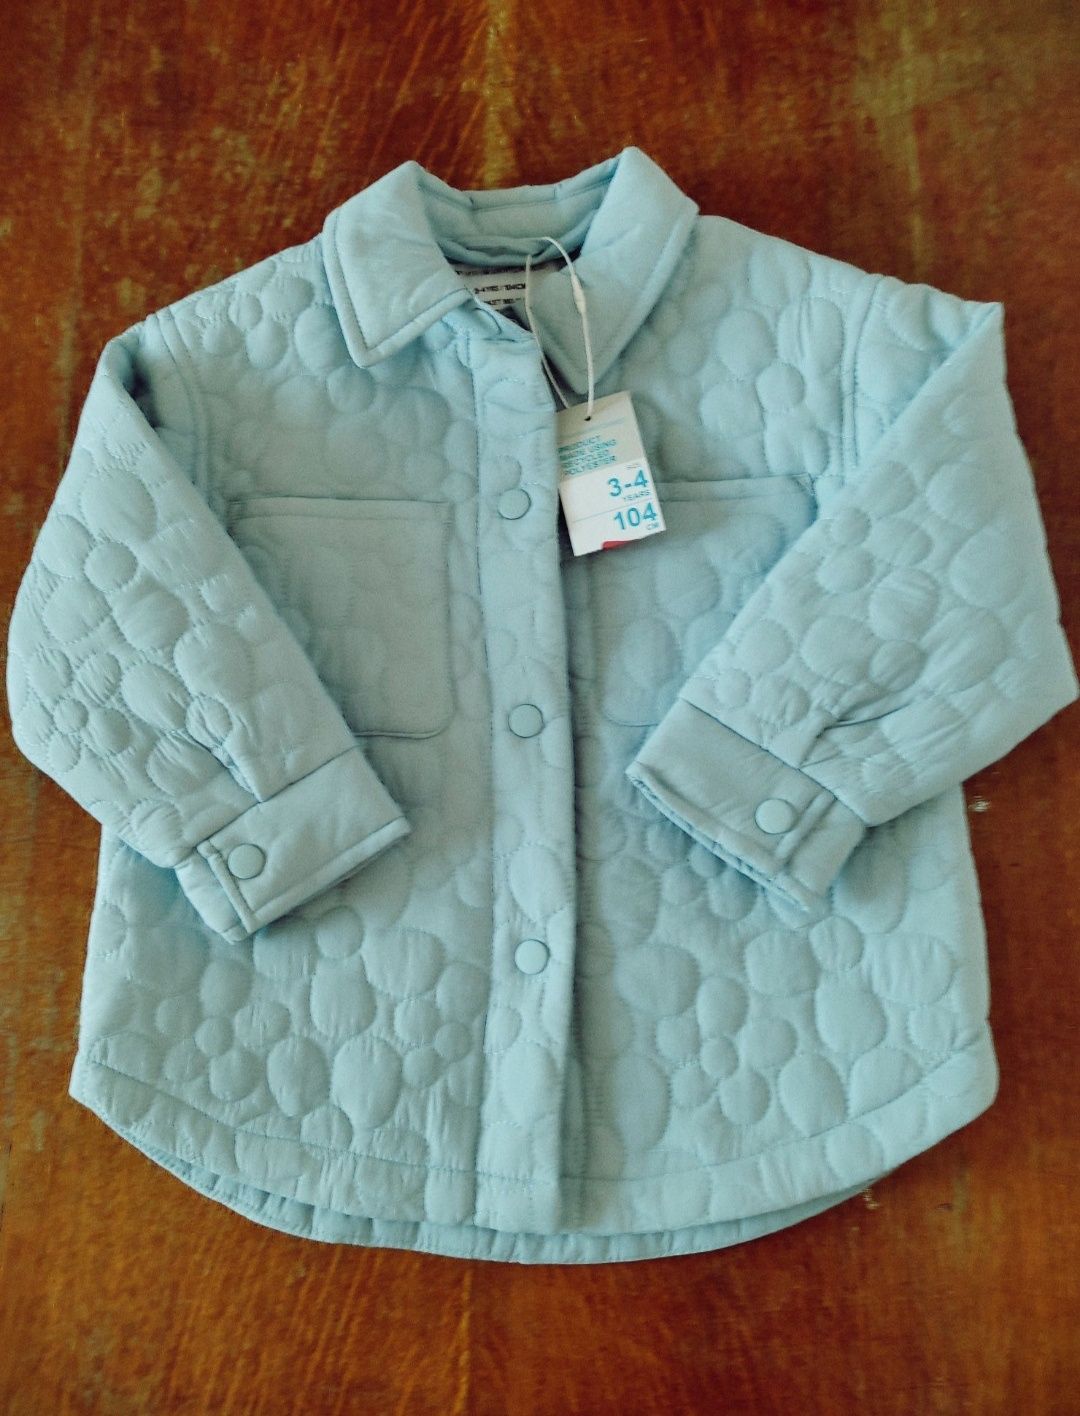 Курточка  Primark, 104, реглан Zara, Primark 98, 5-8 років